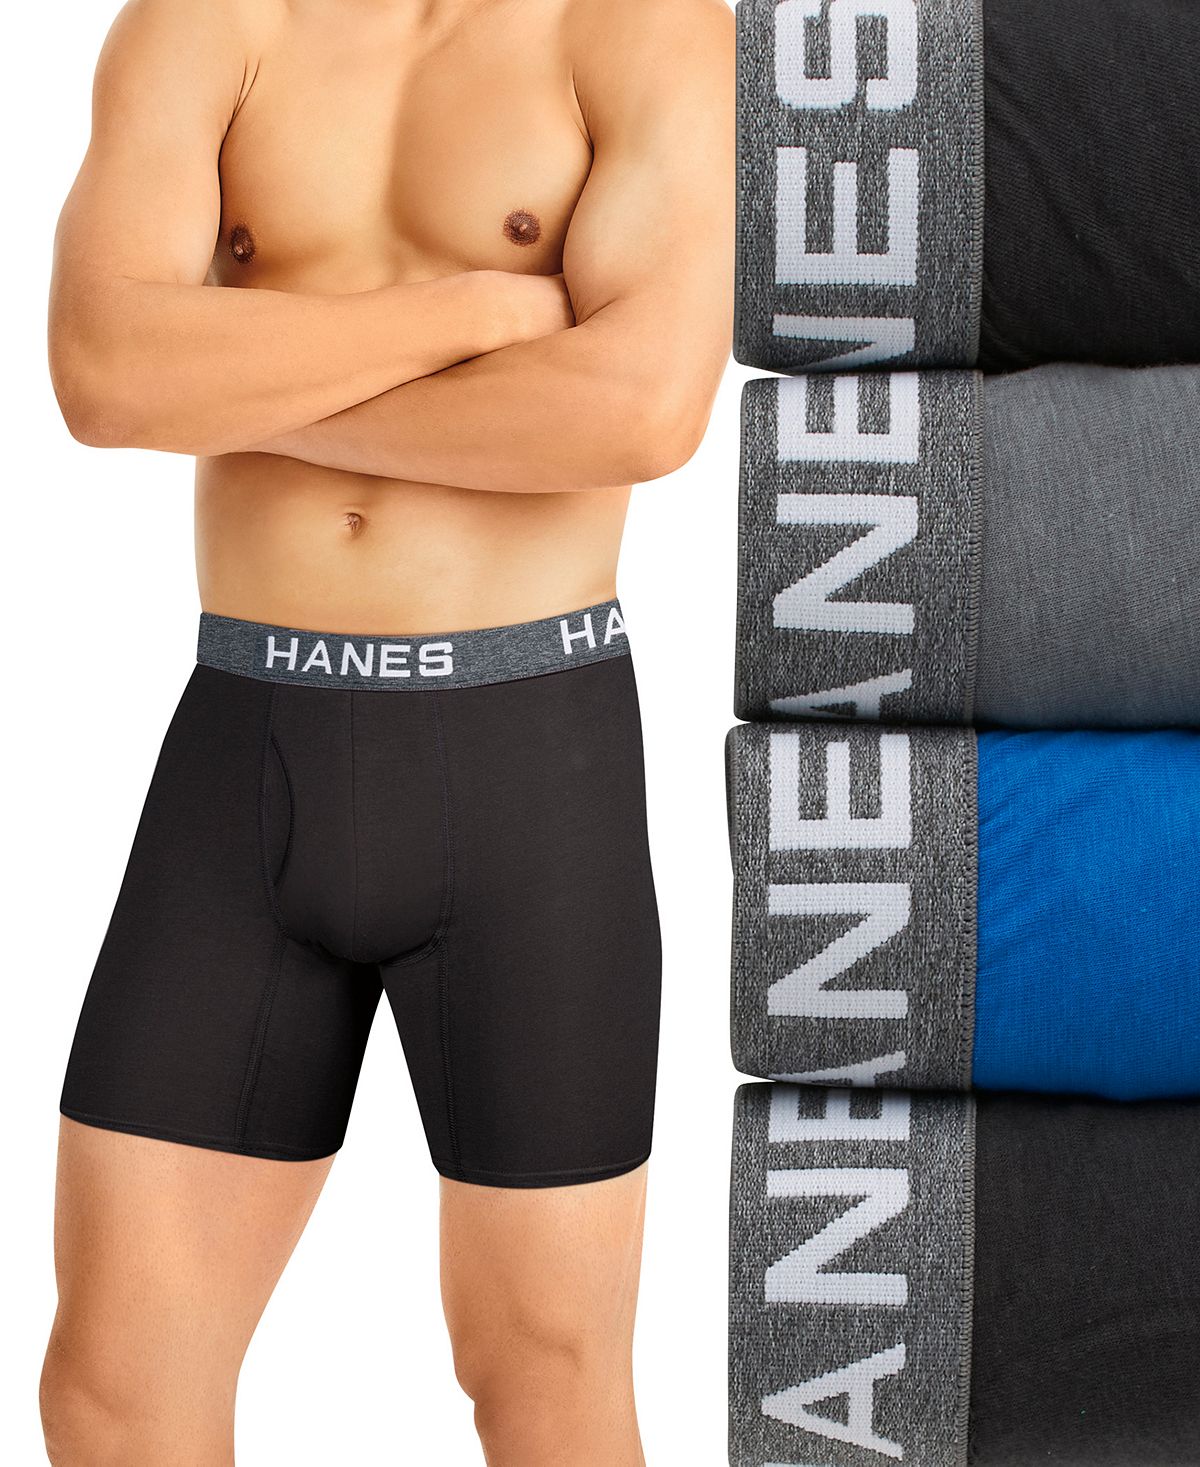 Мужские шорты Ultimate ComfortFlex Fit, 4 шт. Трусы-боксеры из влагоотводящей сетки Hanes